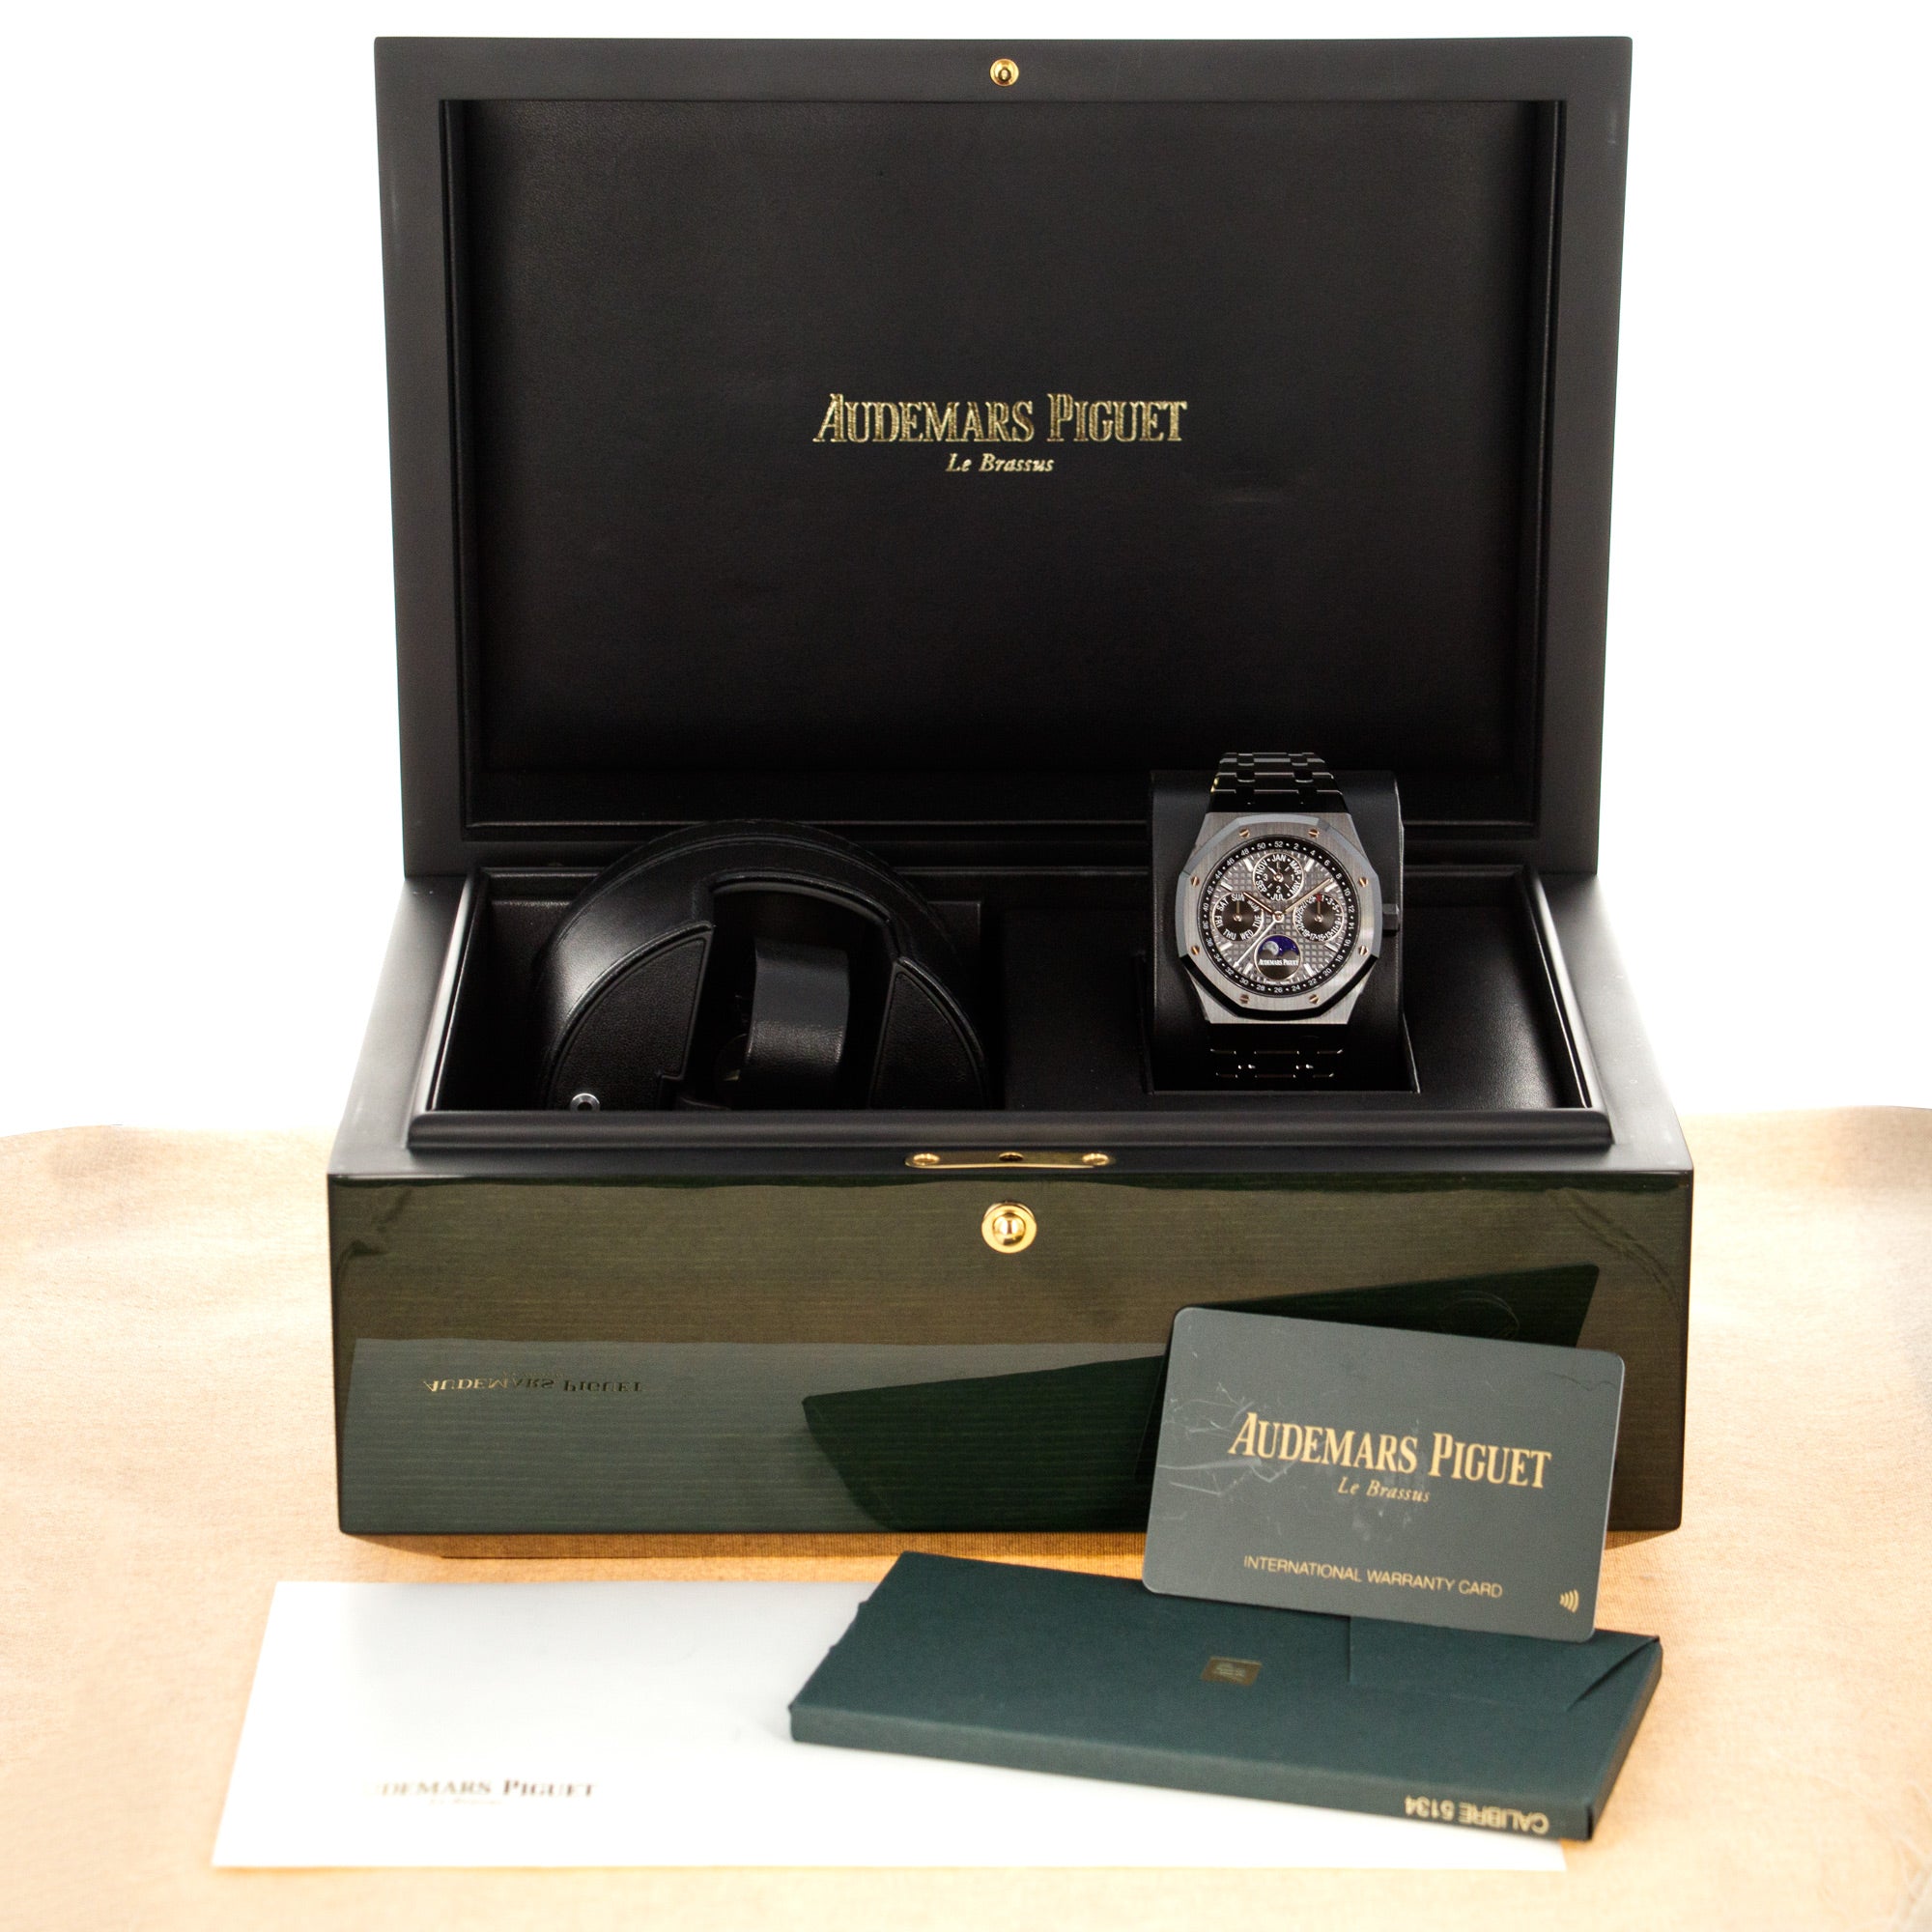 Audemars Piguet - Audemars Piguet Ceramic Royal Oak Perpetual Calendar Watch Ref. 26579 - The Keystone Watches